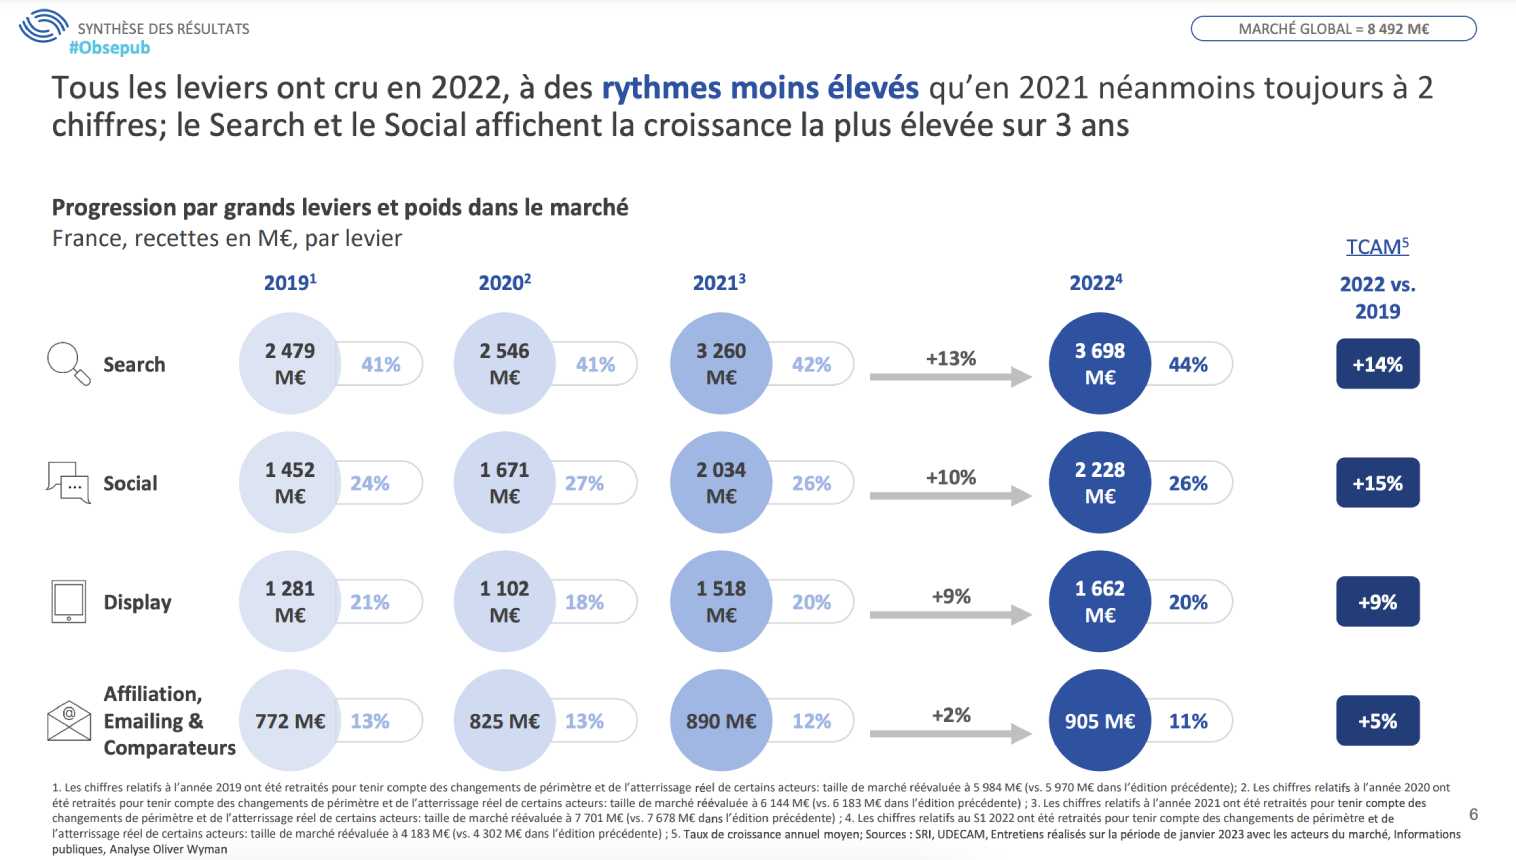 Palancas de la publicidad digital en Francia en 2022.